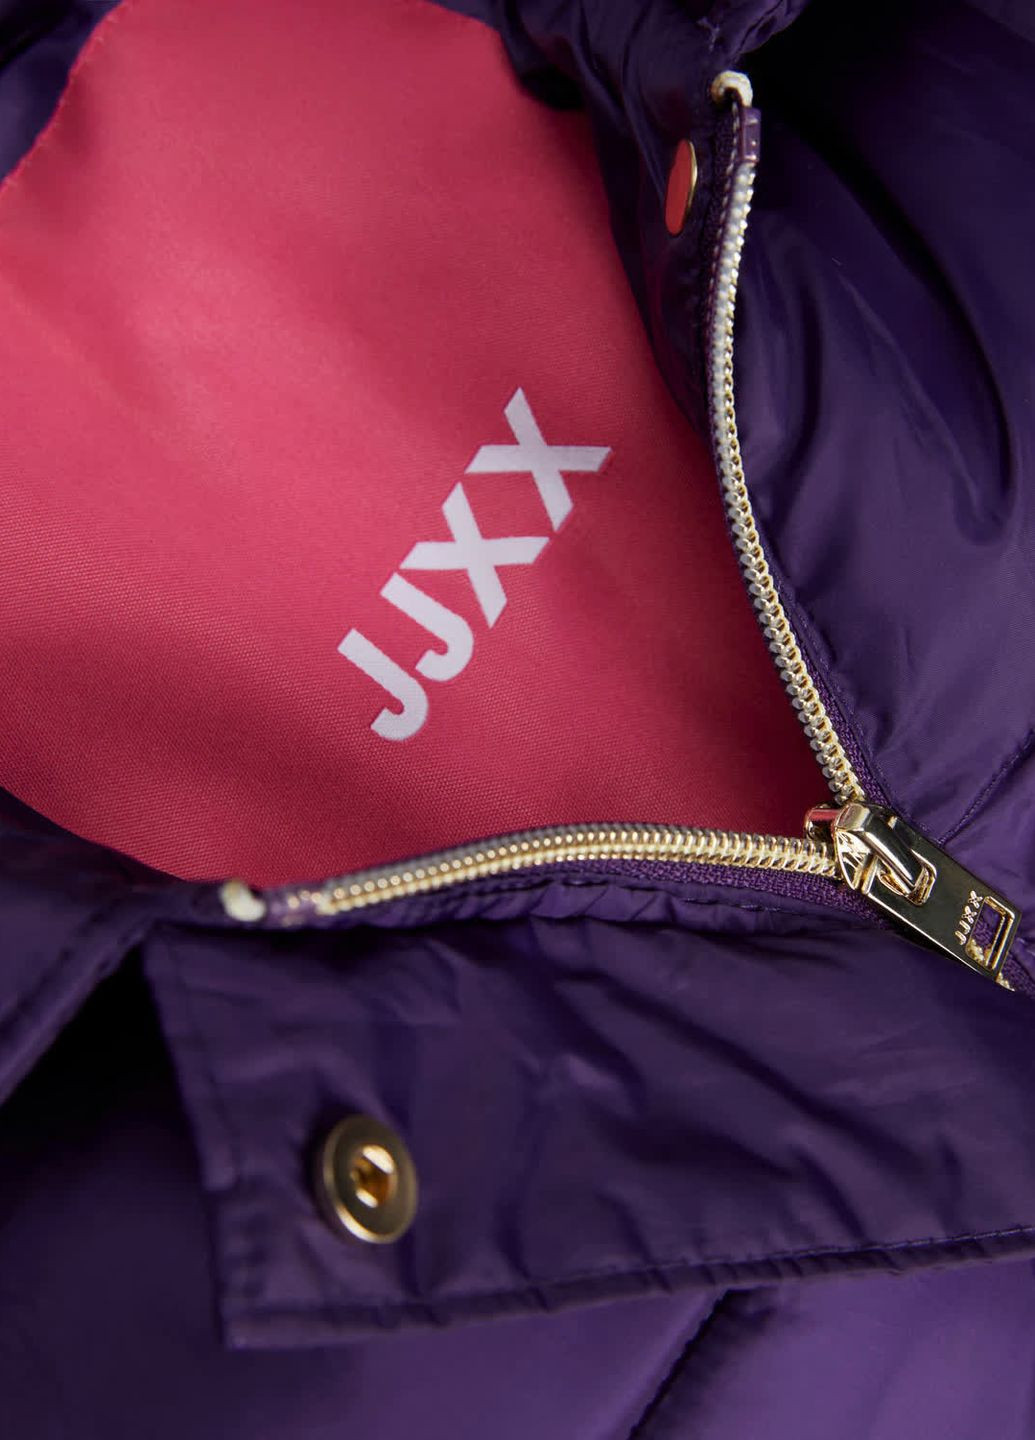 Фіолетова куртка JJXX